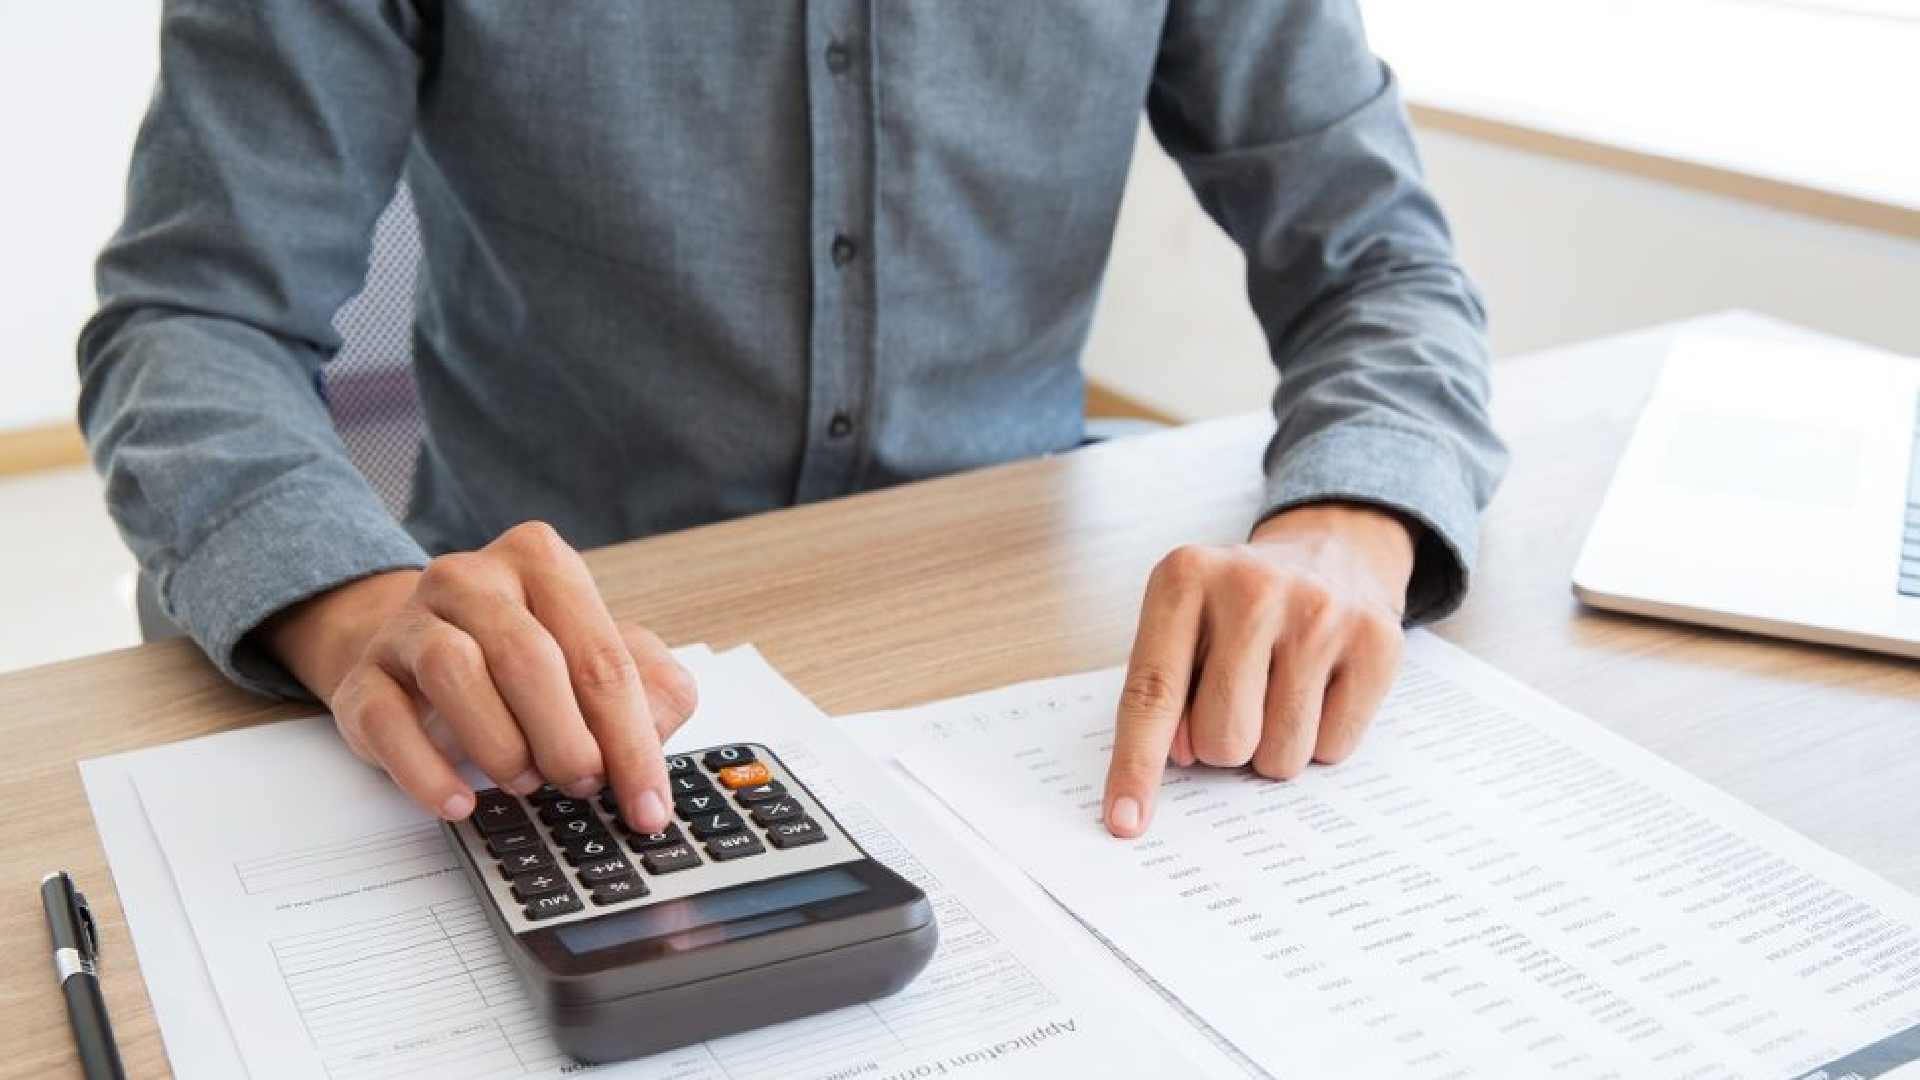 tax invoice format uae